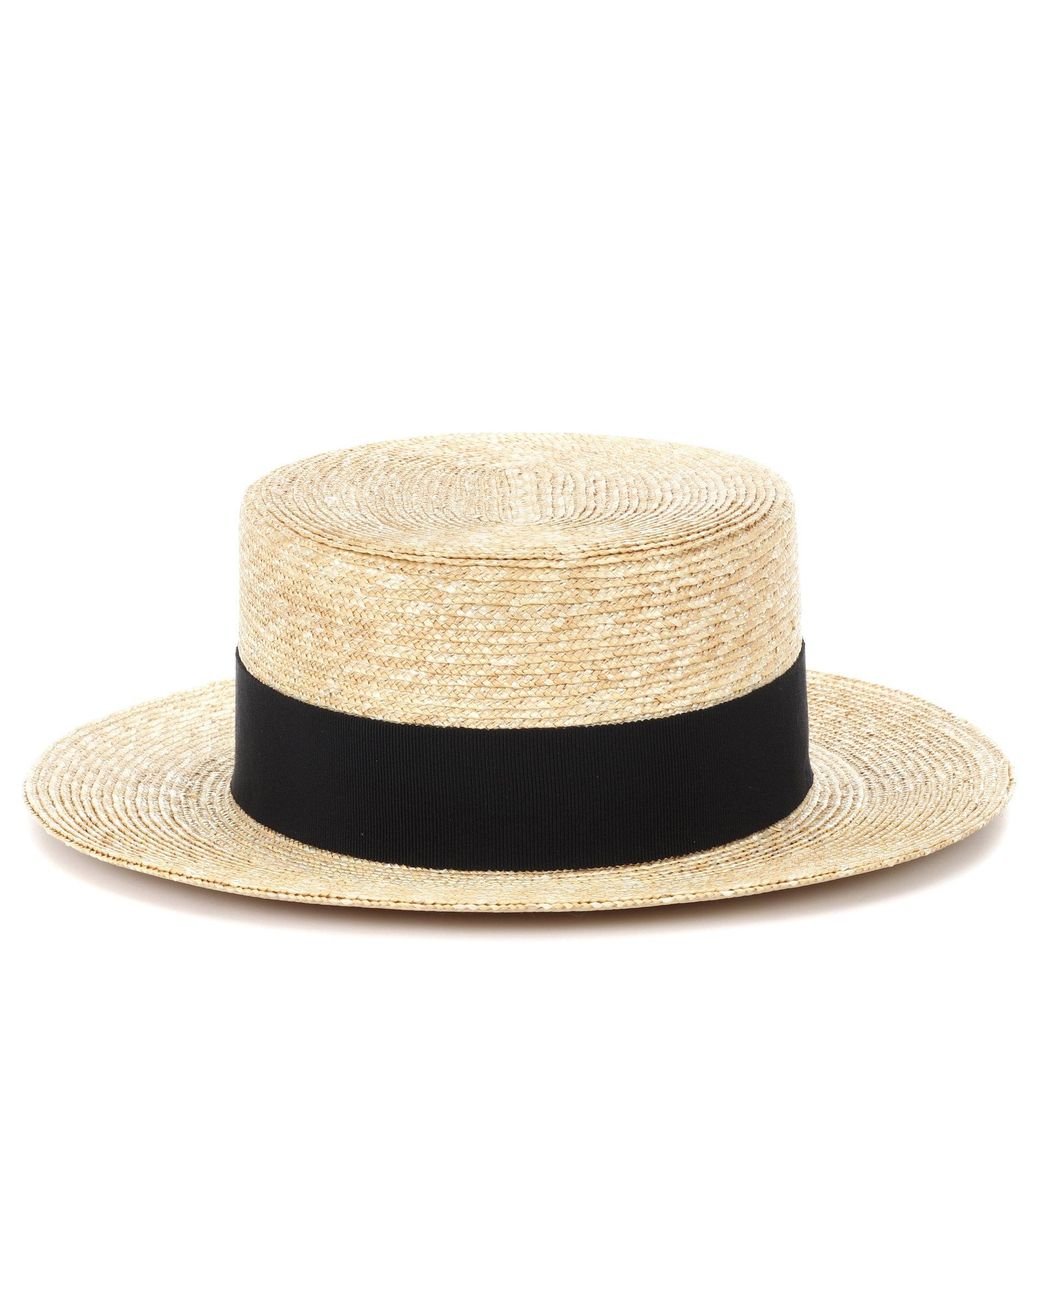 Prada Straw Panama Hat in Natural | Lyst